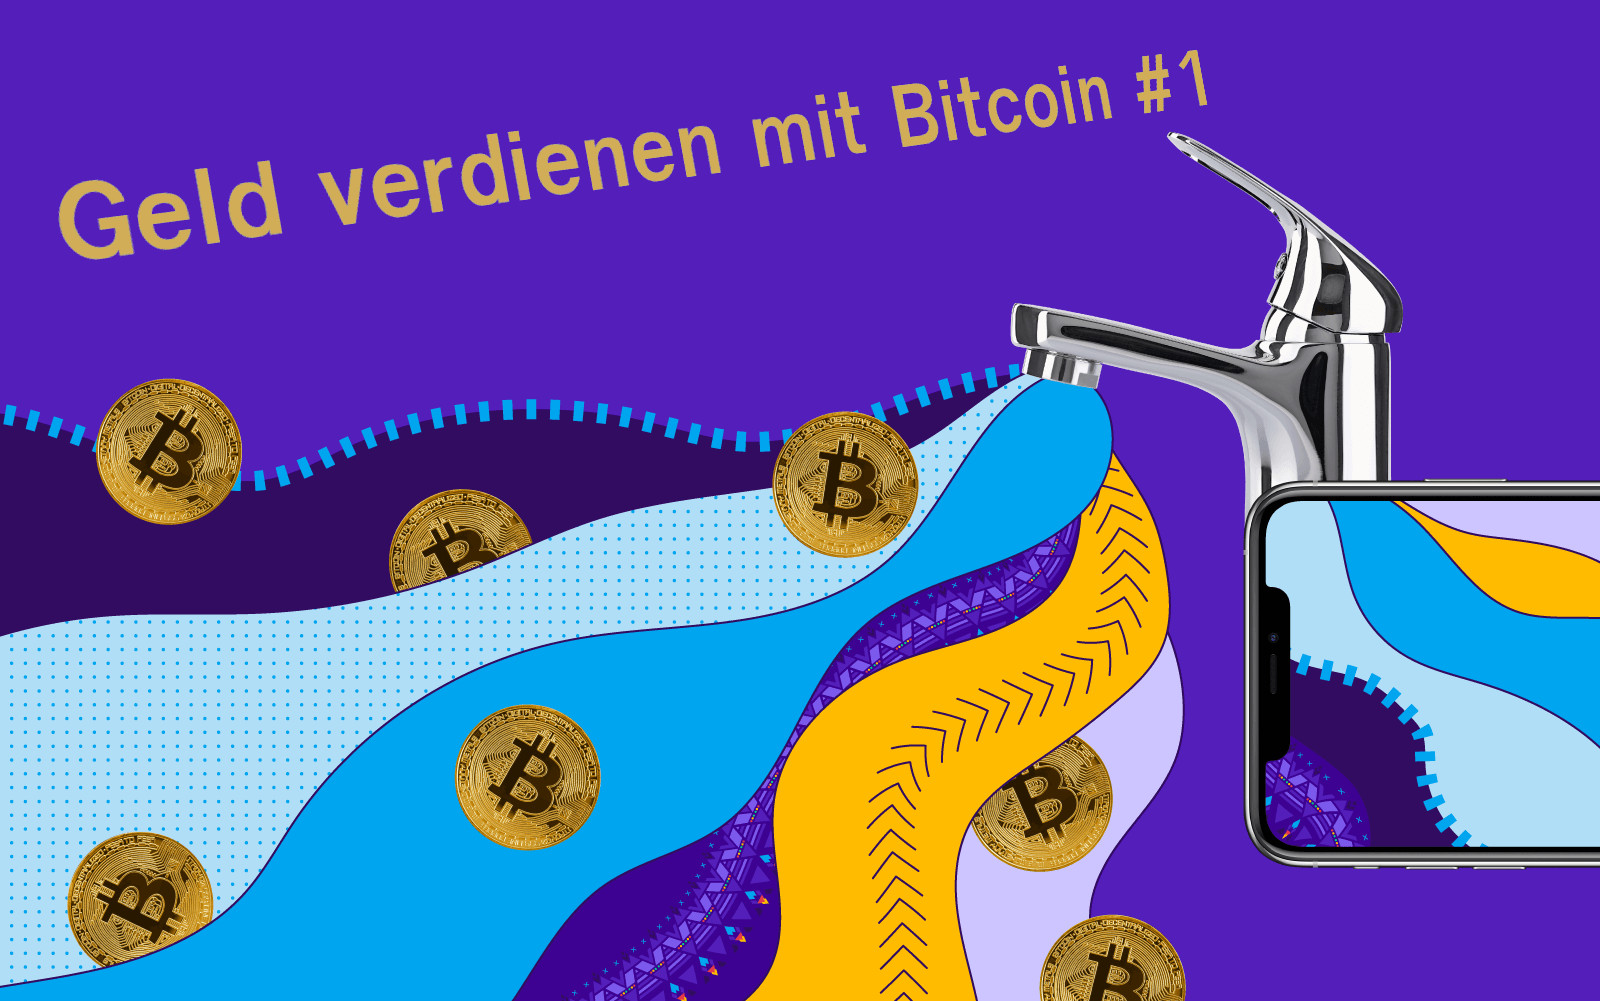 Geld verdienen mit Bitcoin #1: Bitfinex Staking-Programm